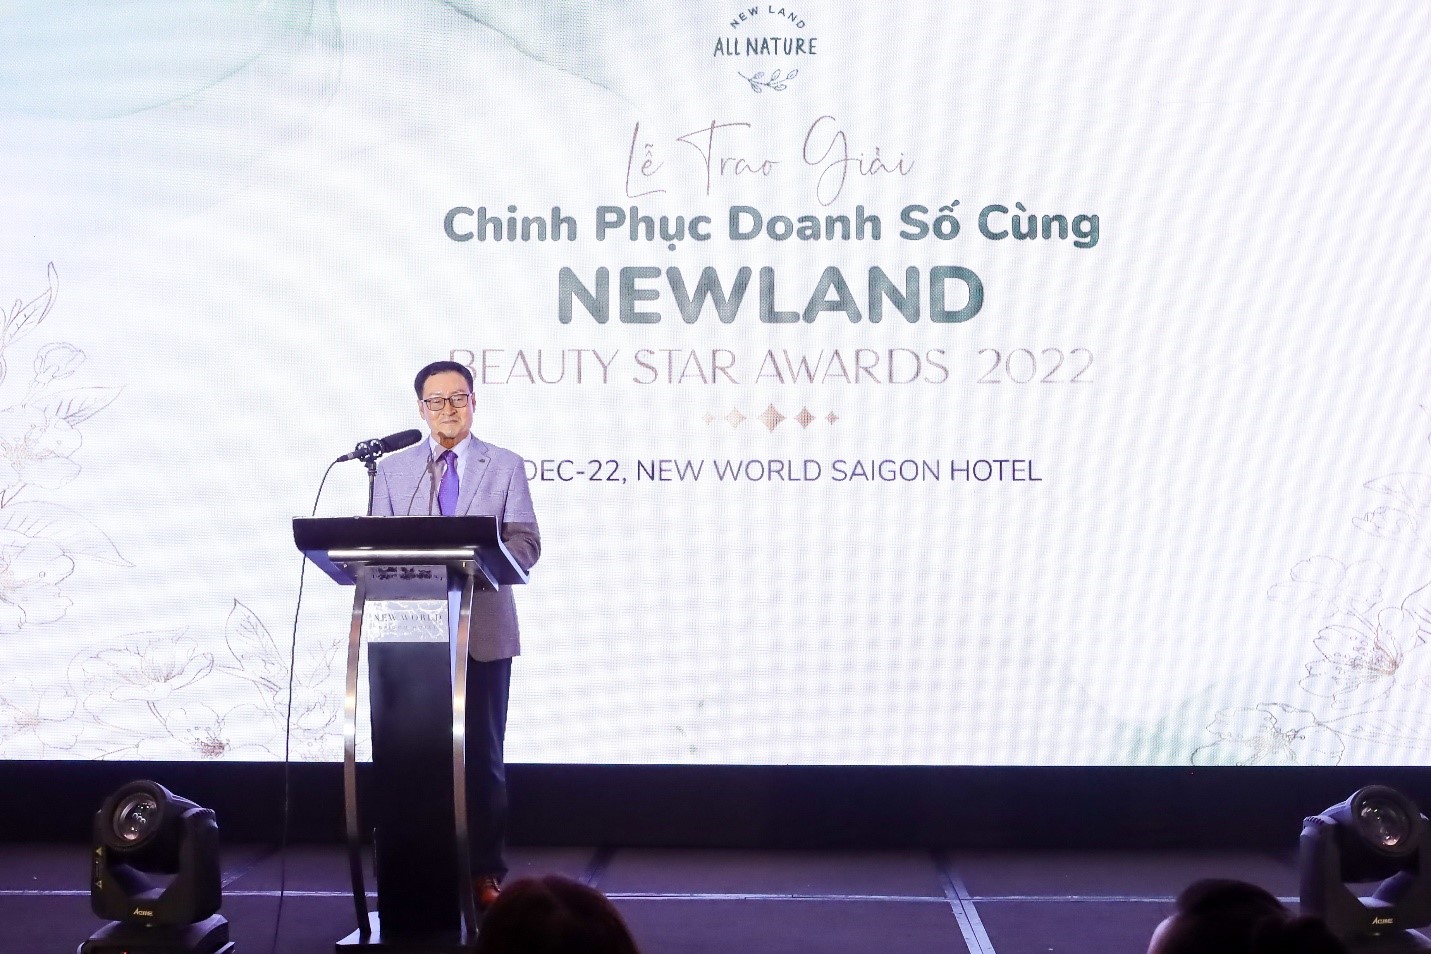 3.000 tác phẩm tham gia Chinh phục doanh số cùng Newland năm 2022